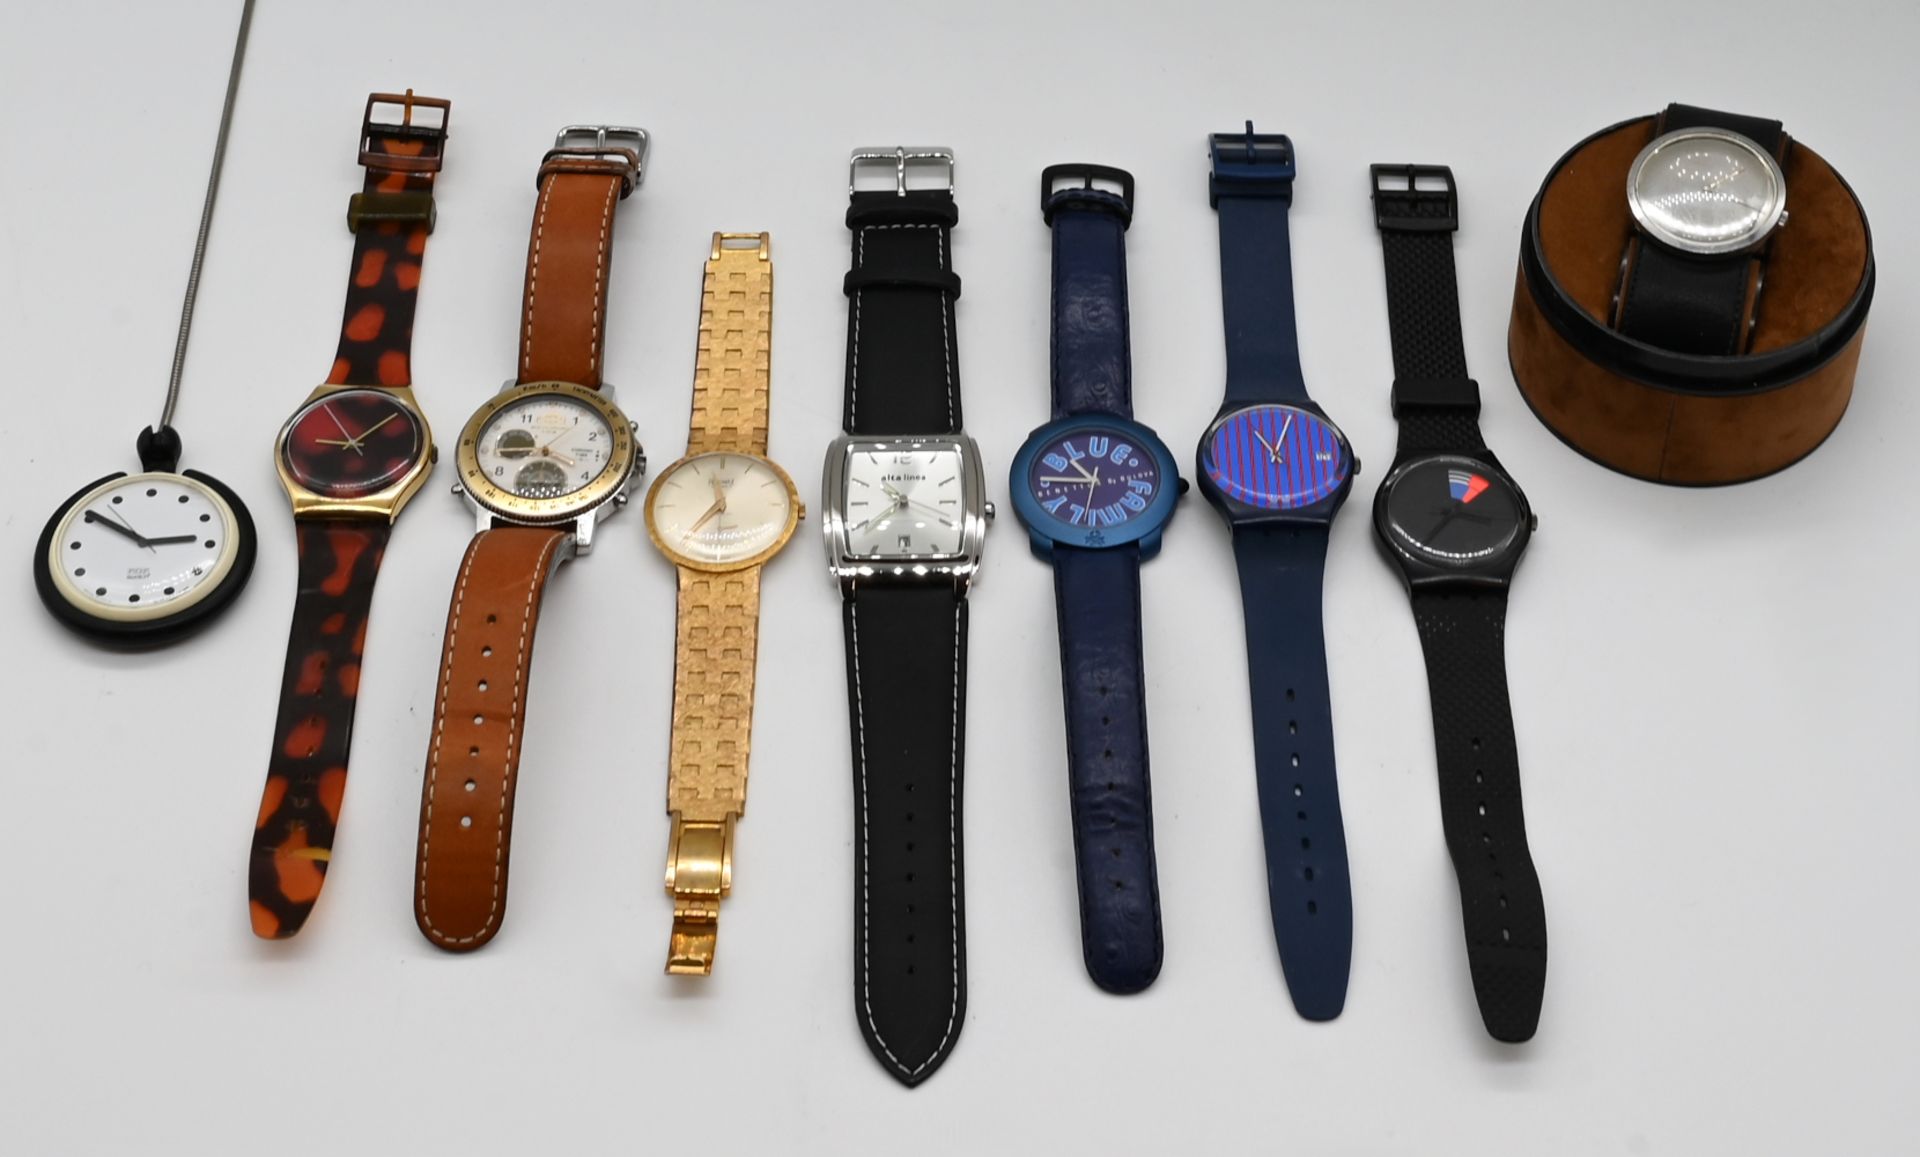 1 Konv. Armbanduhren u.a.: Metall/Kunststoff, z.T. mit Leder, z.B. CAMEL, SWATCH, GEORG JENSEN, je A